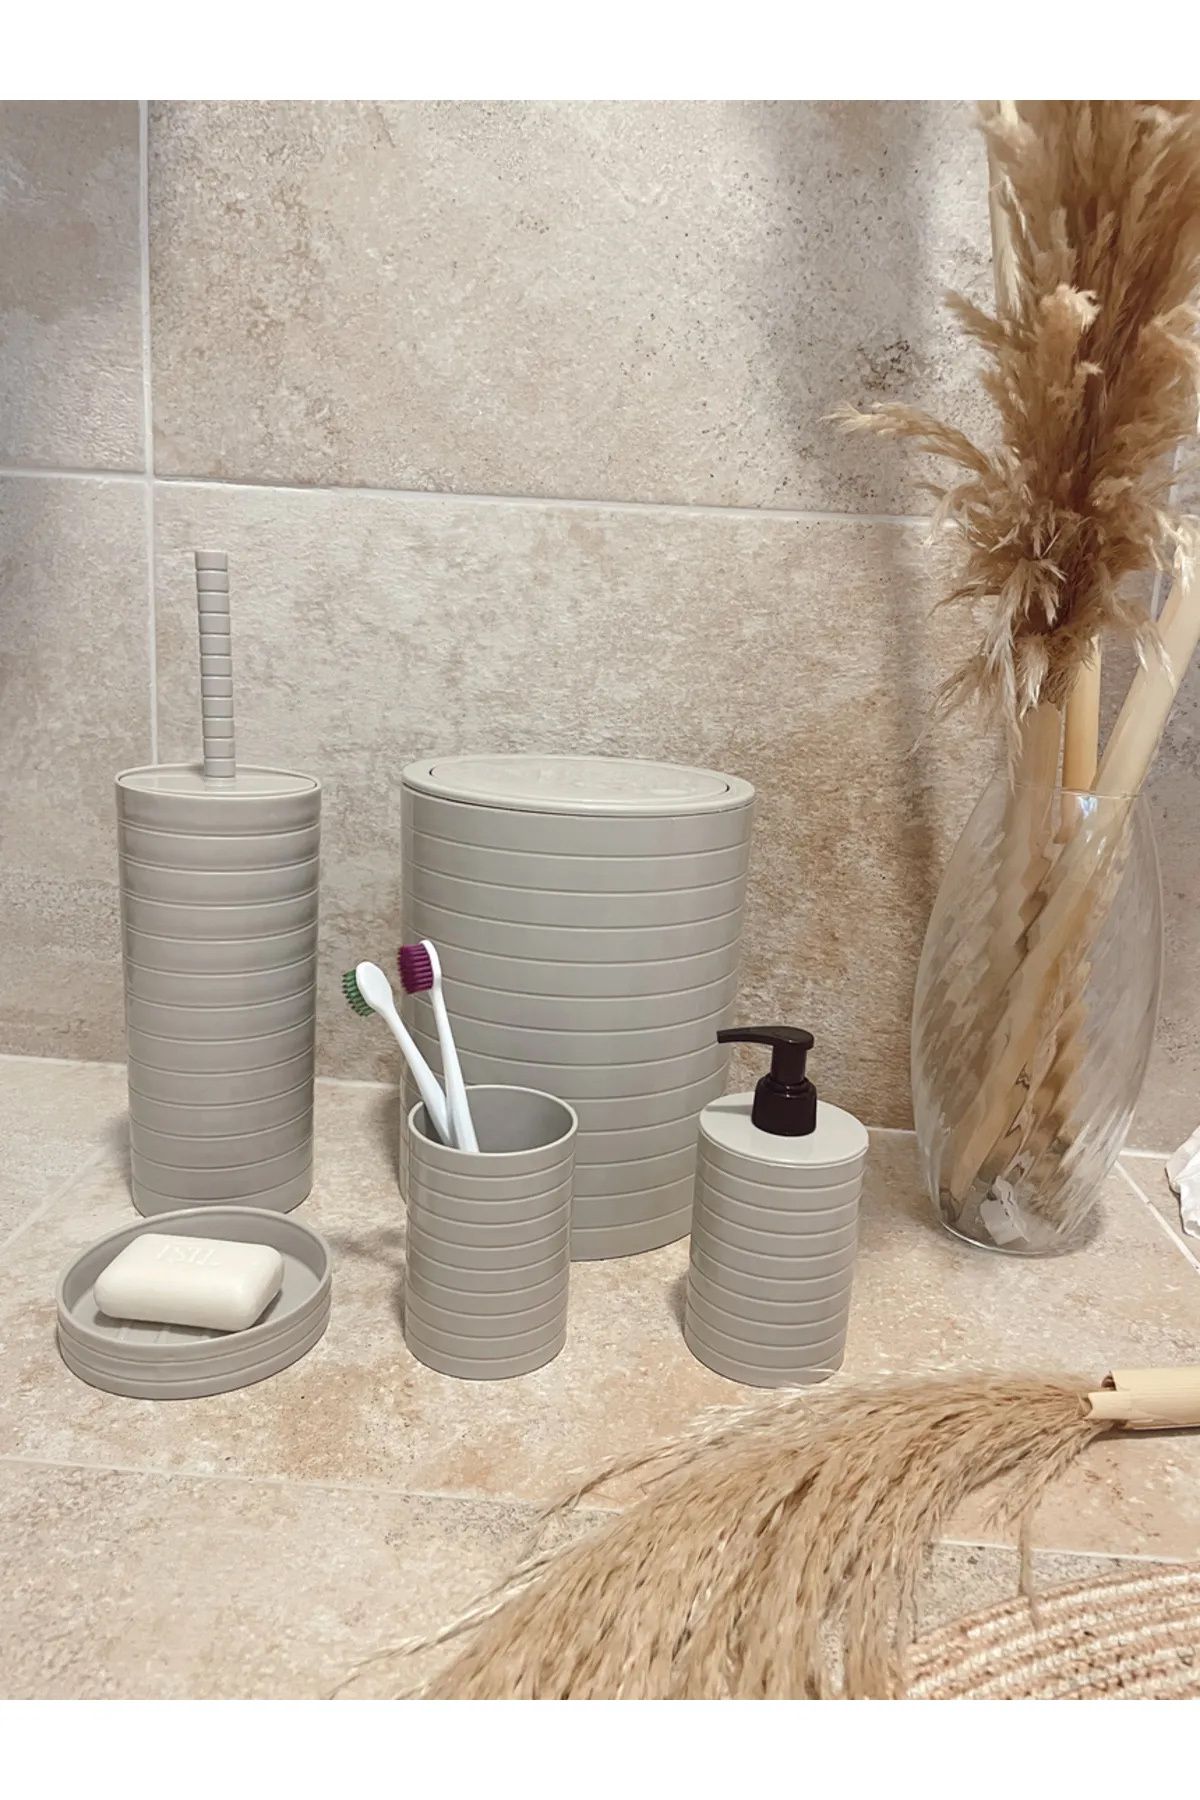 Royaleks Banyo Seti 5'li Krem Çöp Kovası Wc Fırçalık Sıvı Sabunluk Katı Sabunluk